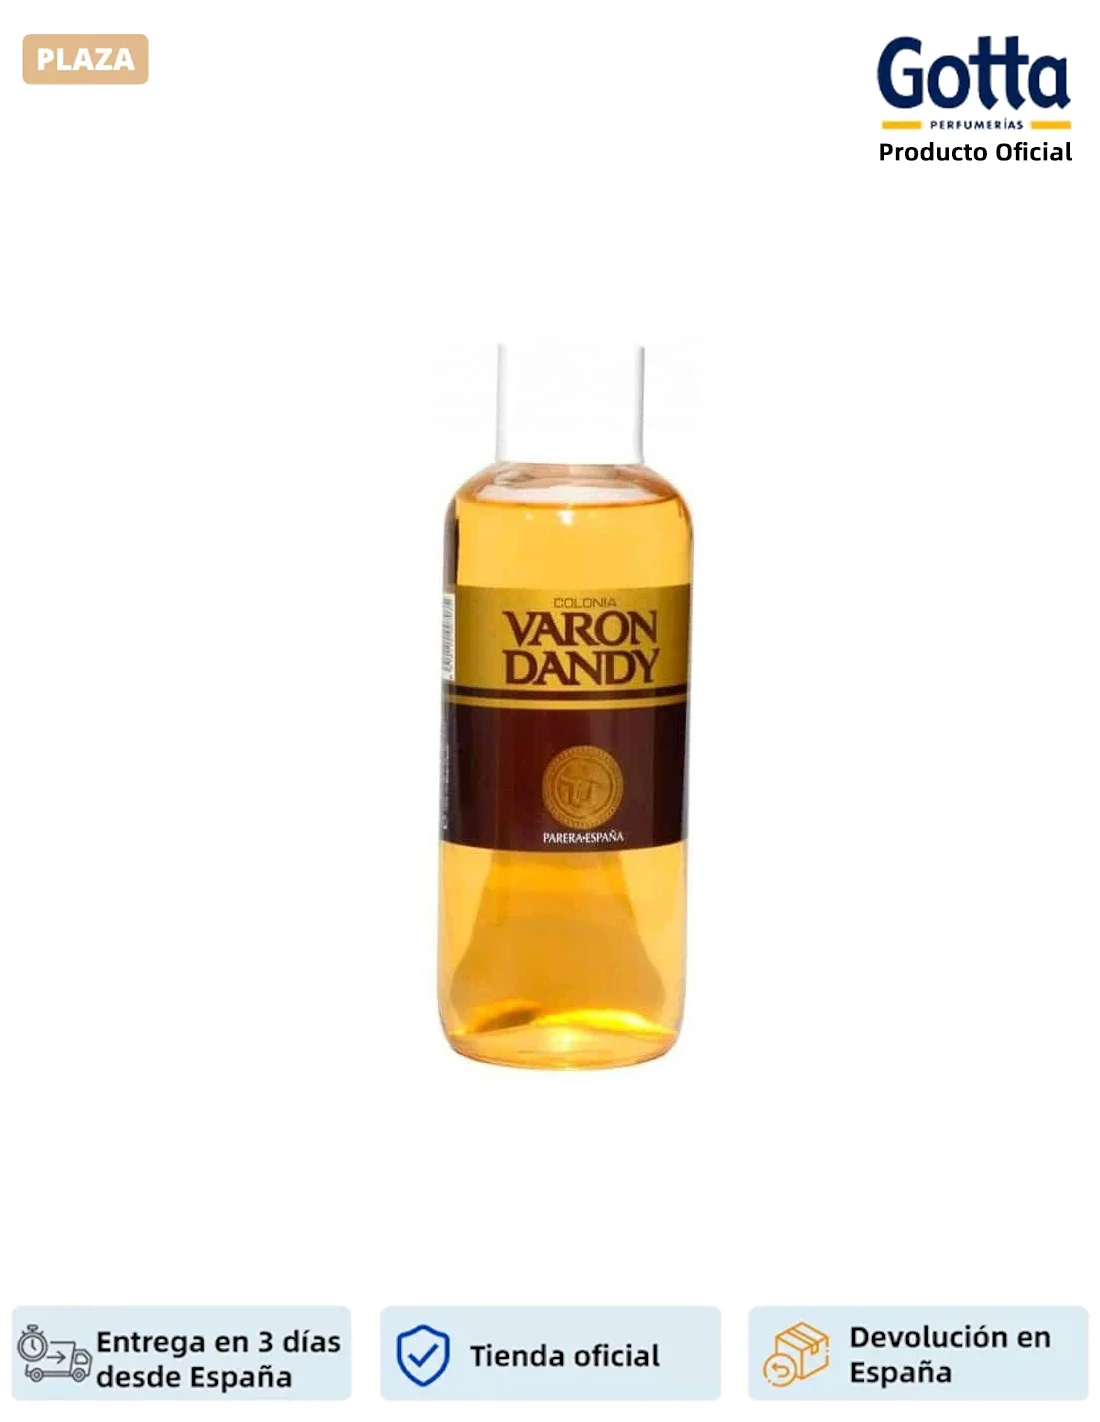 VARON DANDY - COLOGNE - 1 L - Belleza y salud, Perfumes y desodorantes,  Colonias - Perfumes masculinos 100% originales.